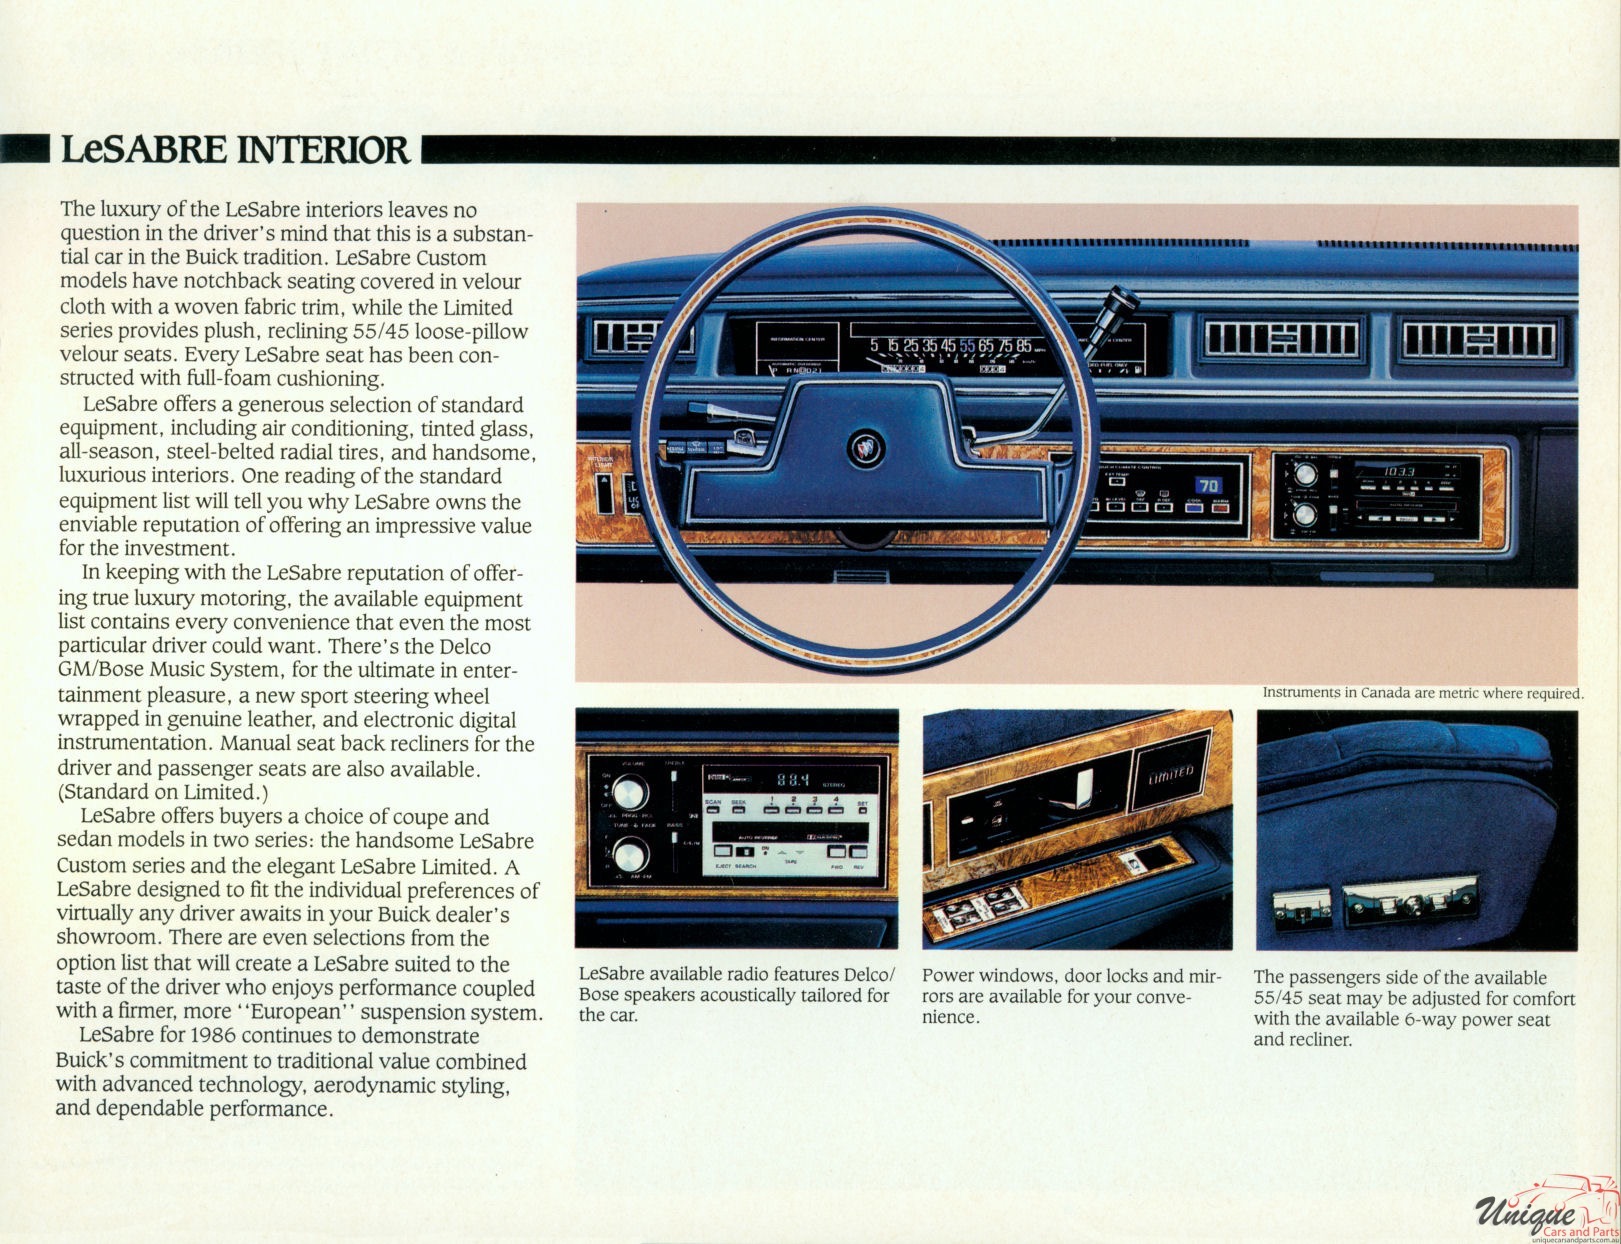 1986 Buick LeSabre (Canada) Brochure Page 3